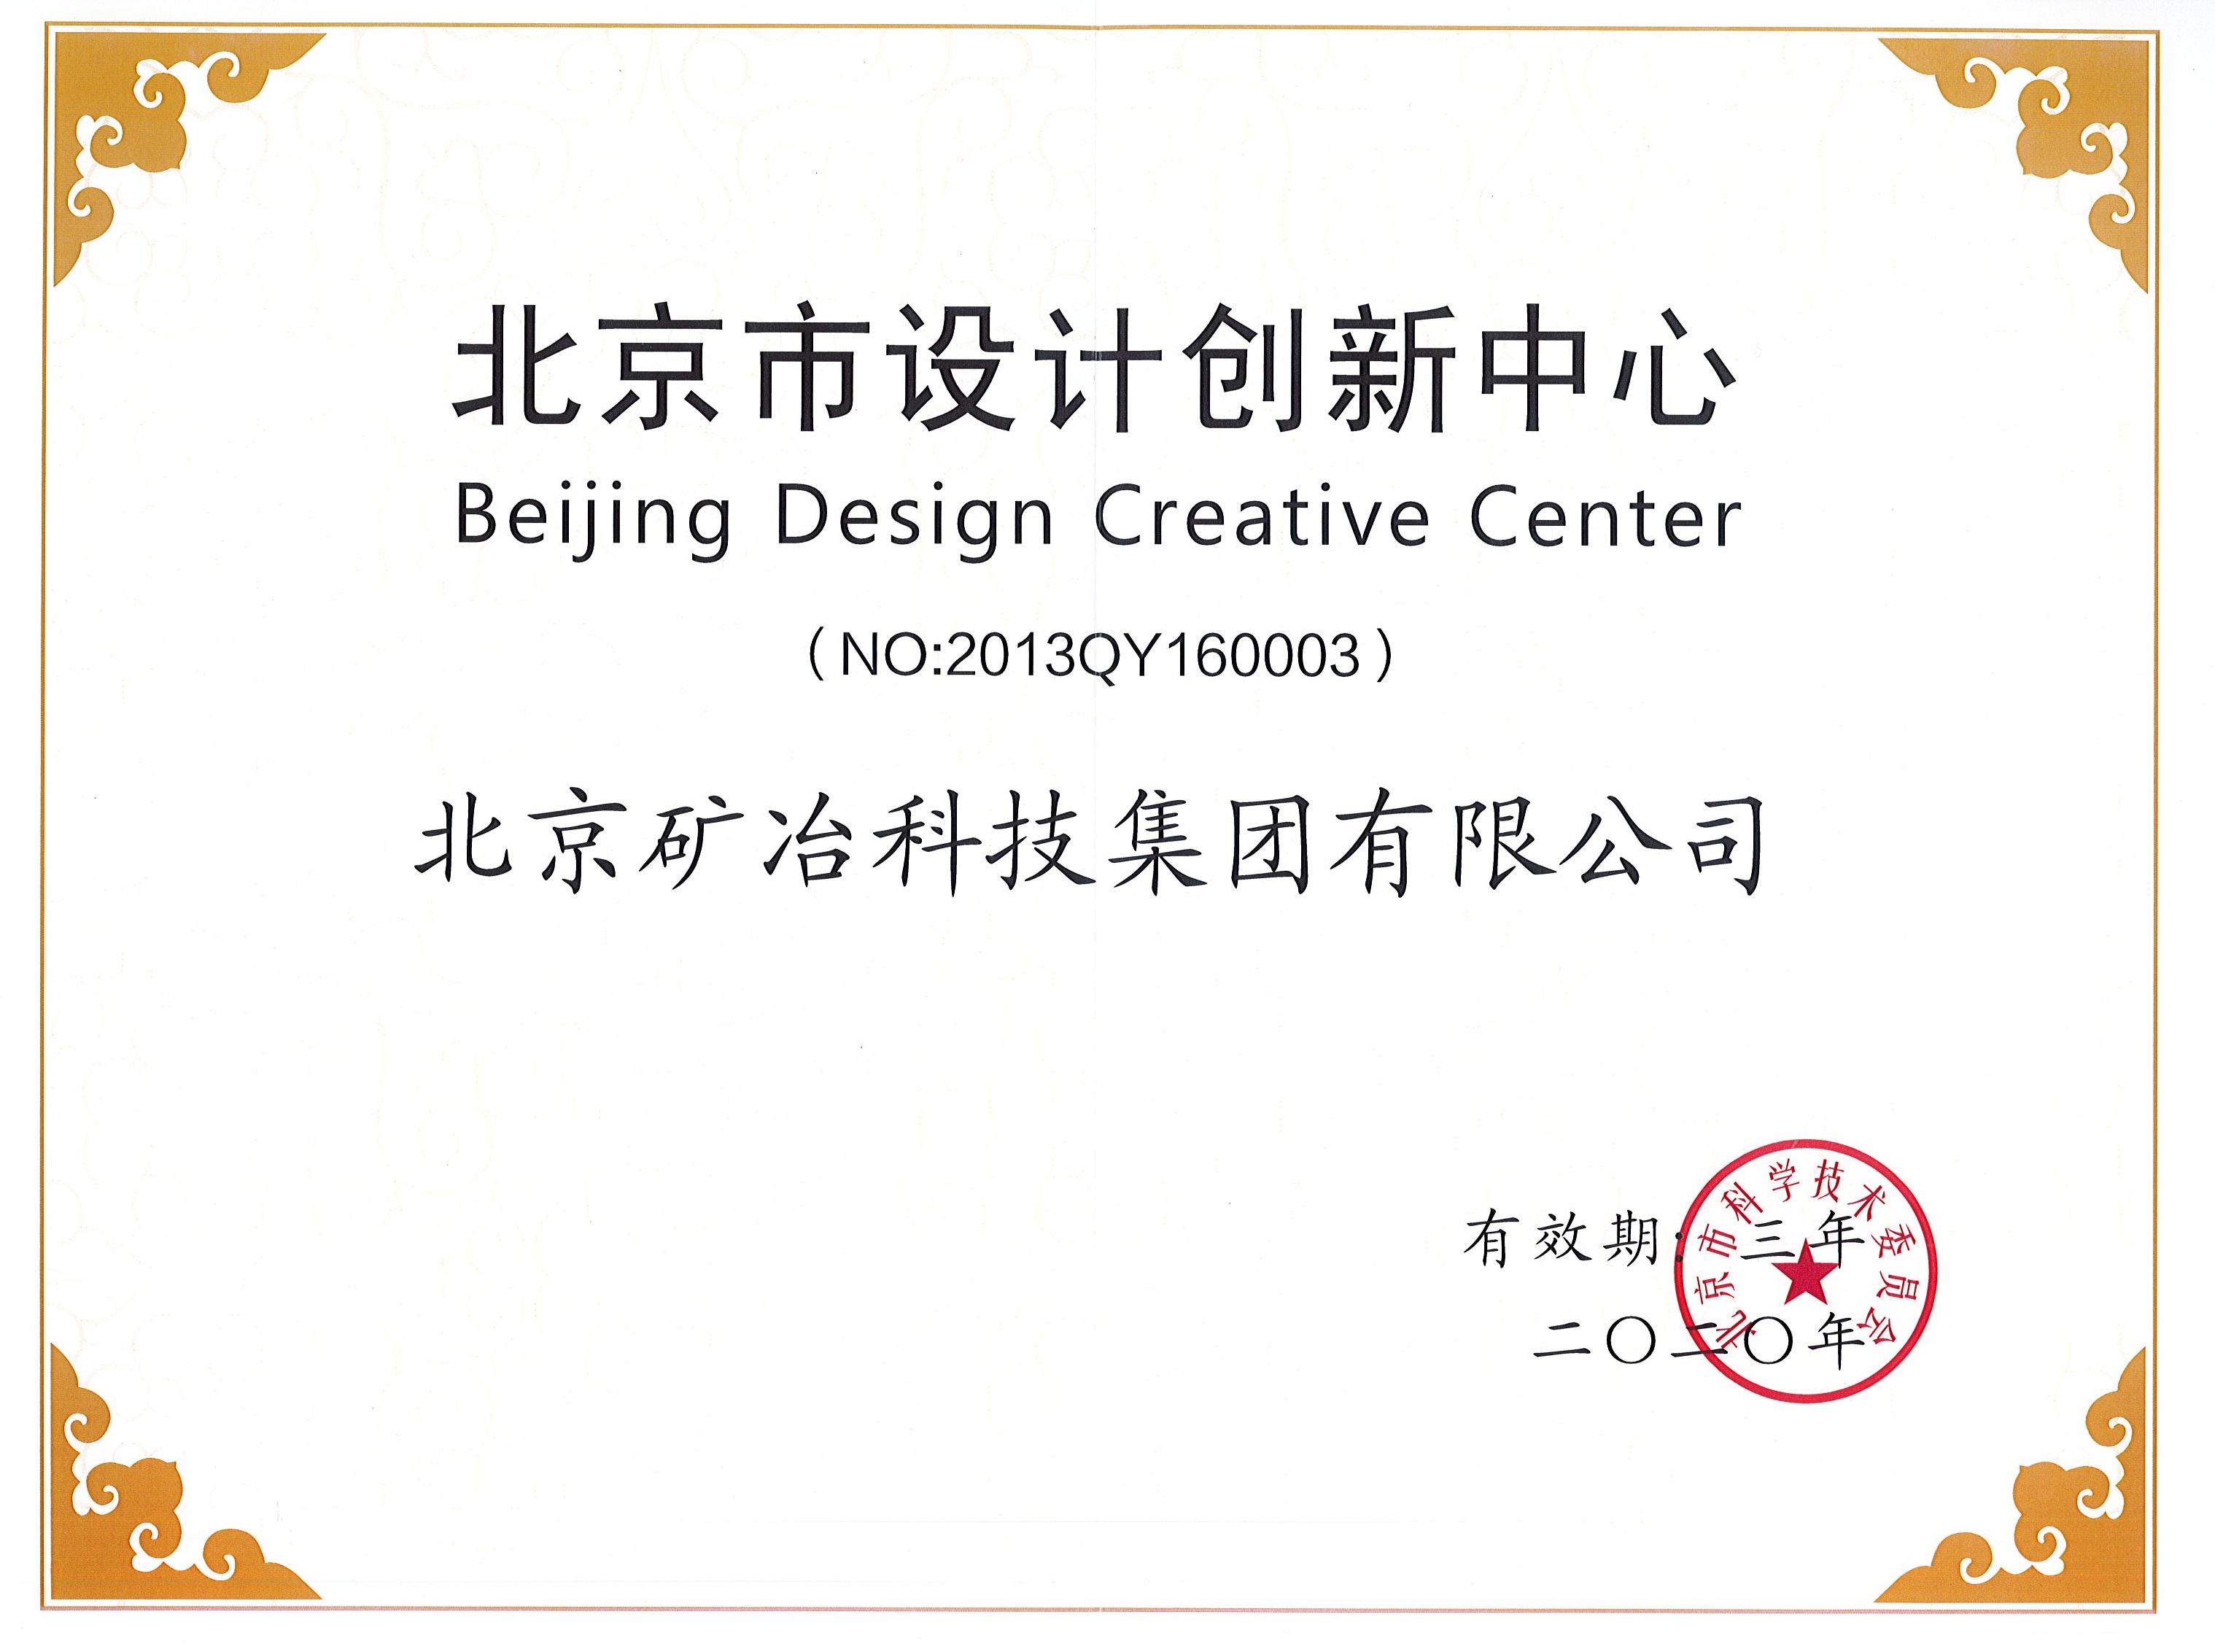 北京市設計創新中心.jpg